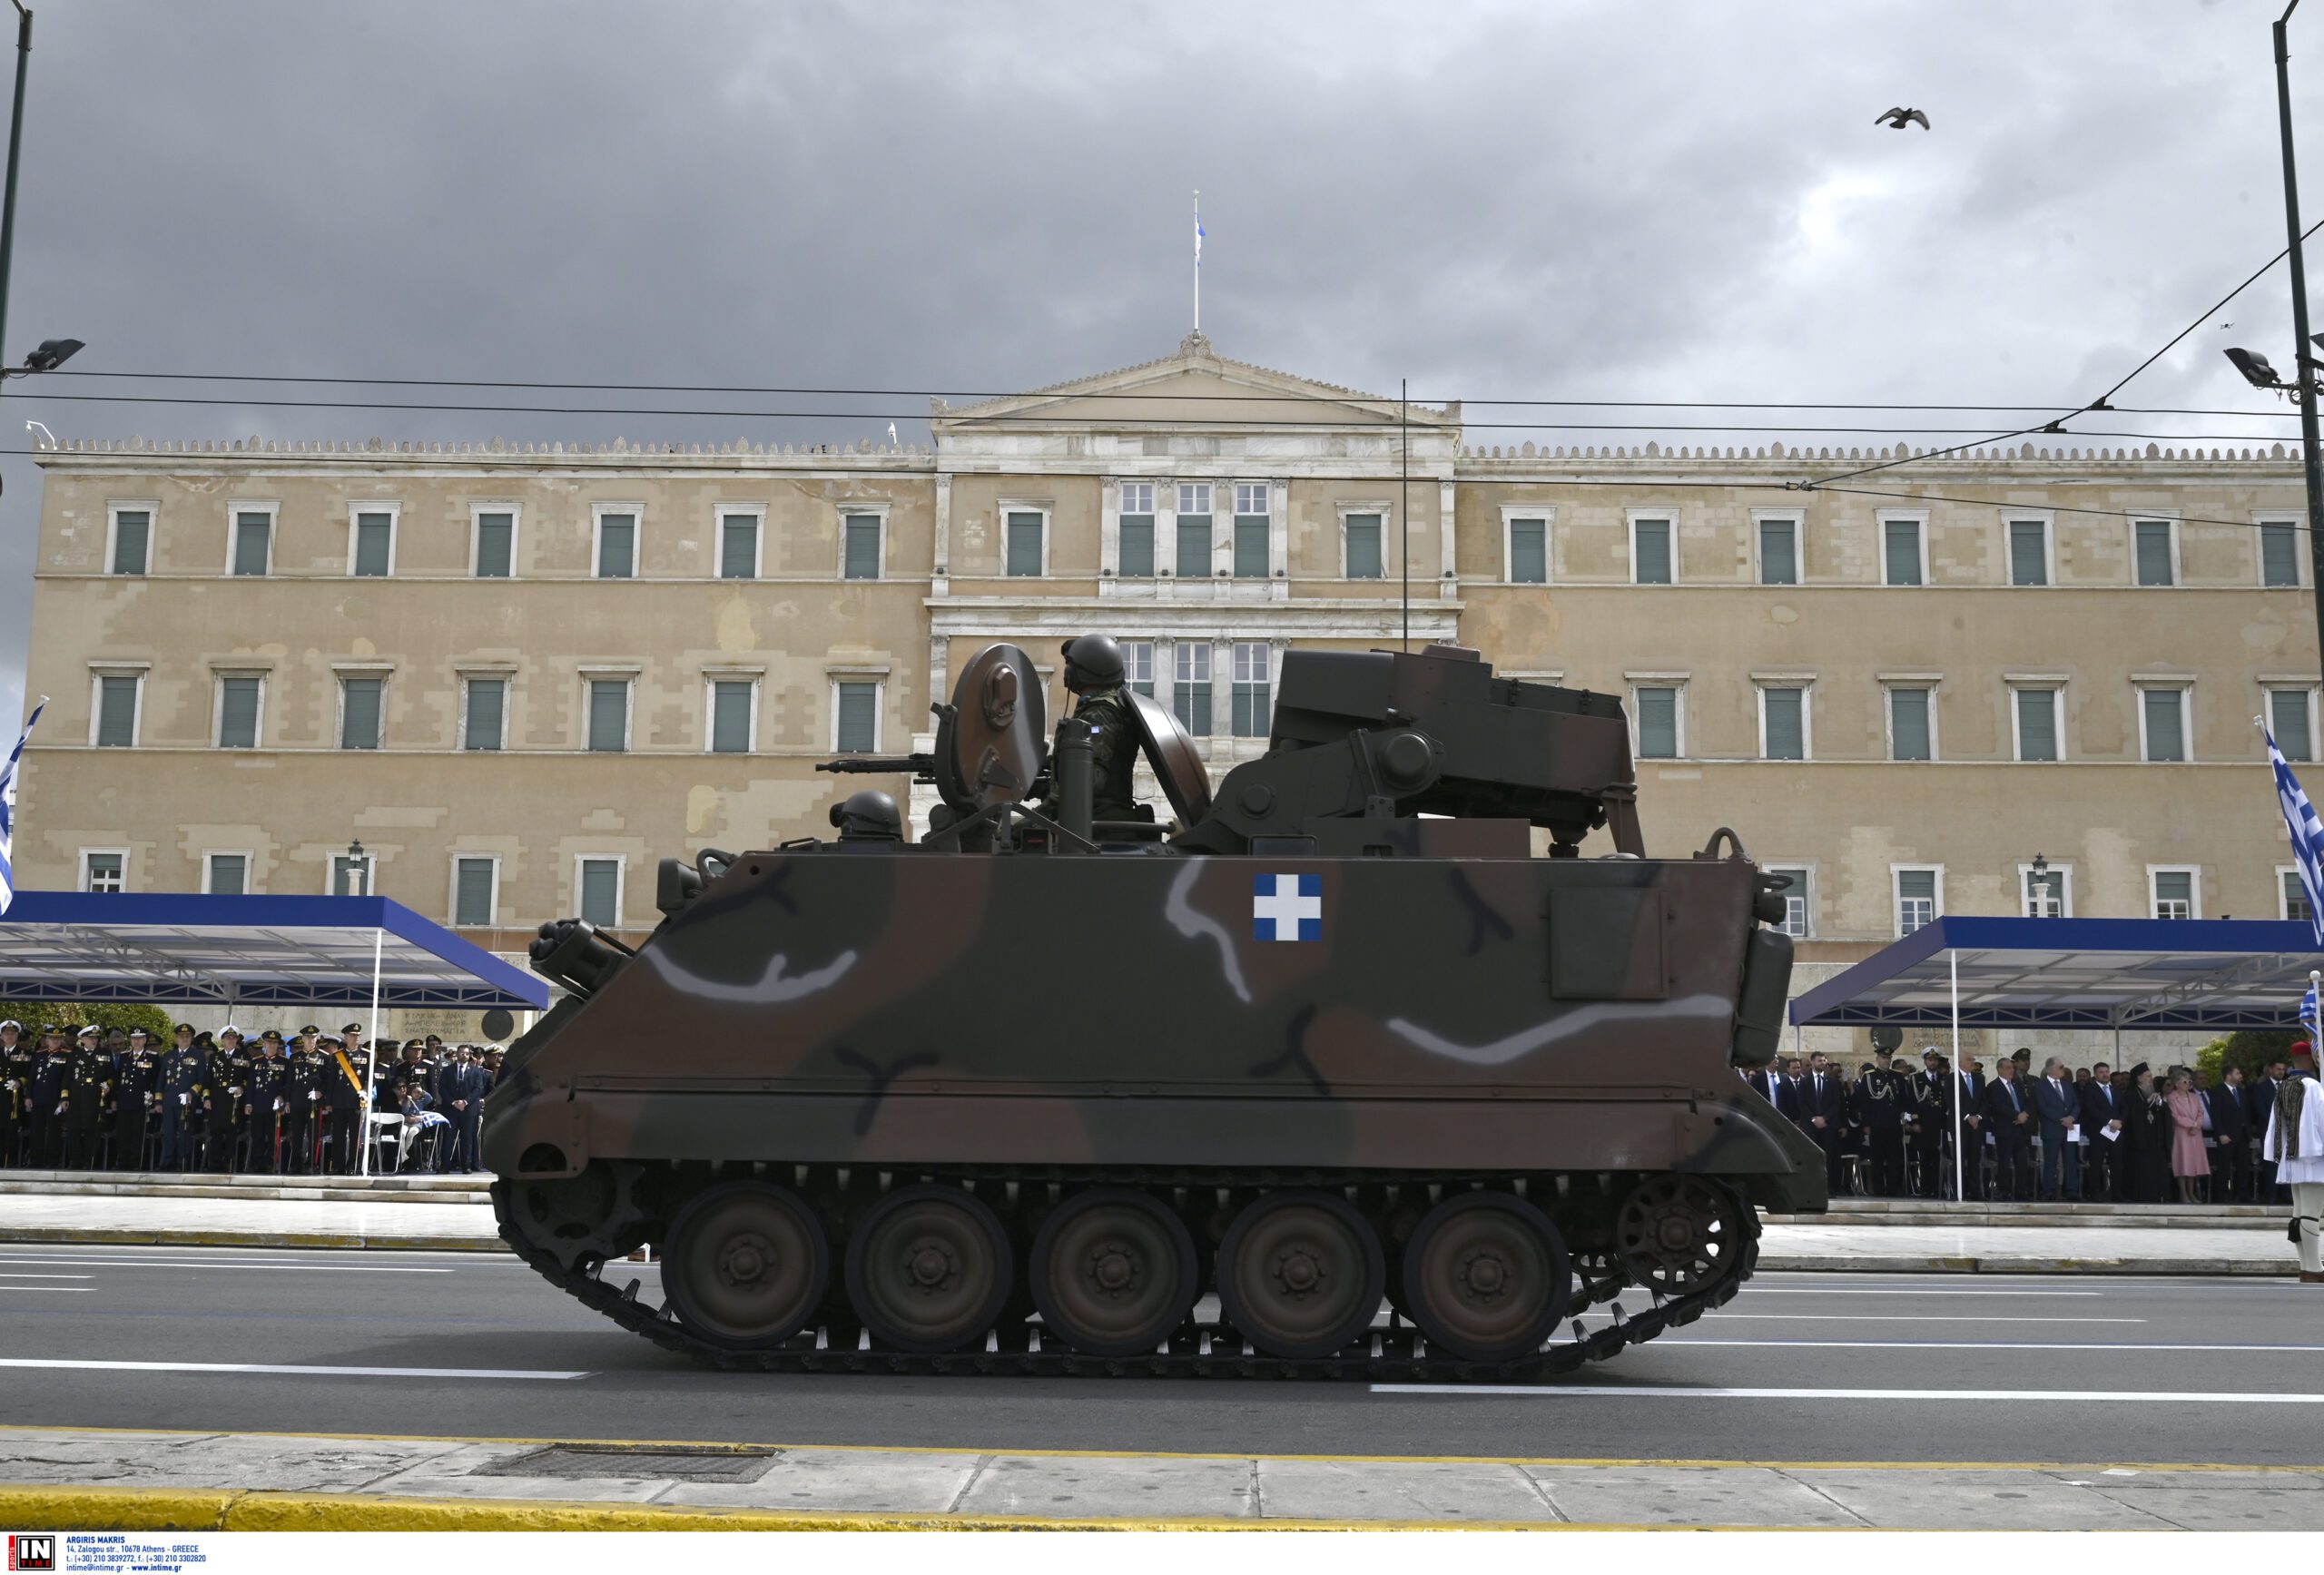 25η Μαρτίου: Με δόξα και τιμή η στρατιωτική παρέλαση στην Αθήνα (pics)